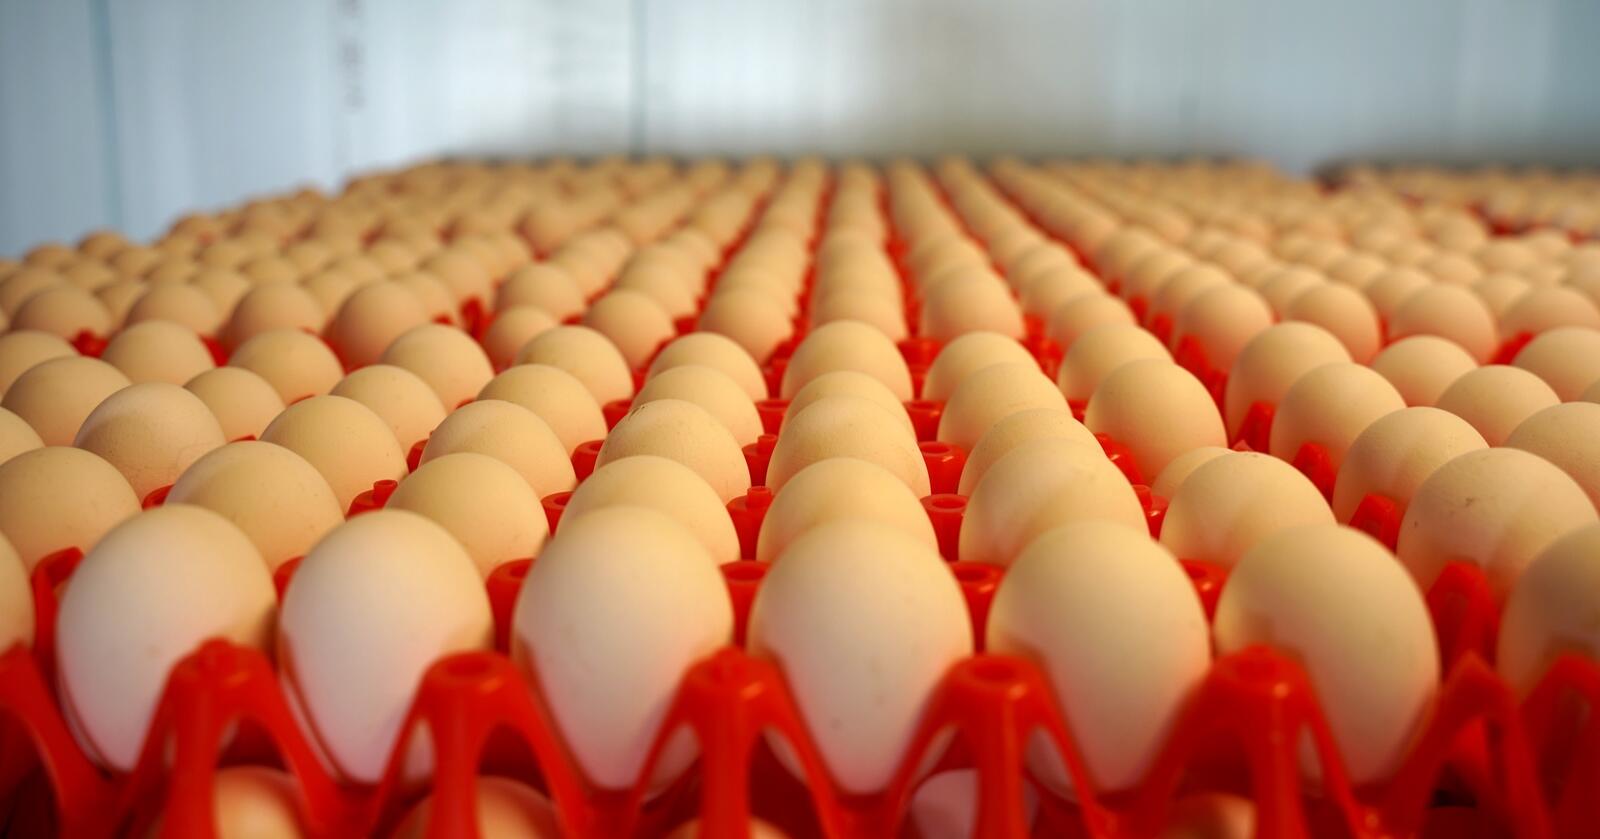 Overproduksjon av egg har ført til tiltak for å stanse bønder fra å produsere. Foto: Lars Bilit Hagen